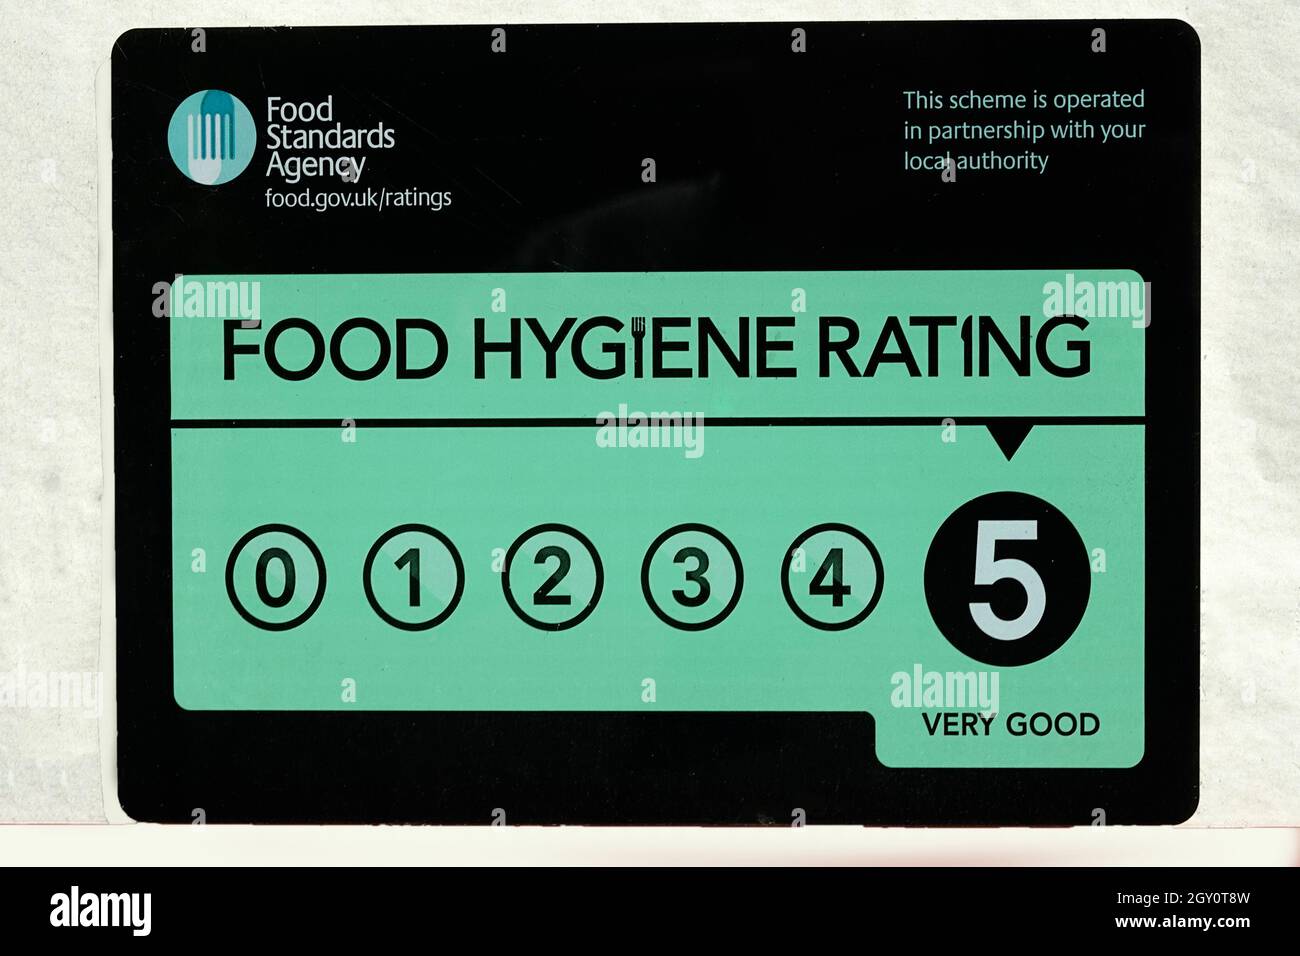 Food Standards Agency Food Hygiene Rating Scheme HRS ein Café-Fenster-Aufkleber mit fünf 5 Sternen sehr gut bewertet in Bezug auf Food & Public Health UK Stockfoto